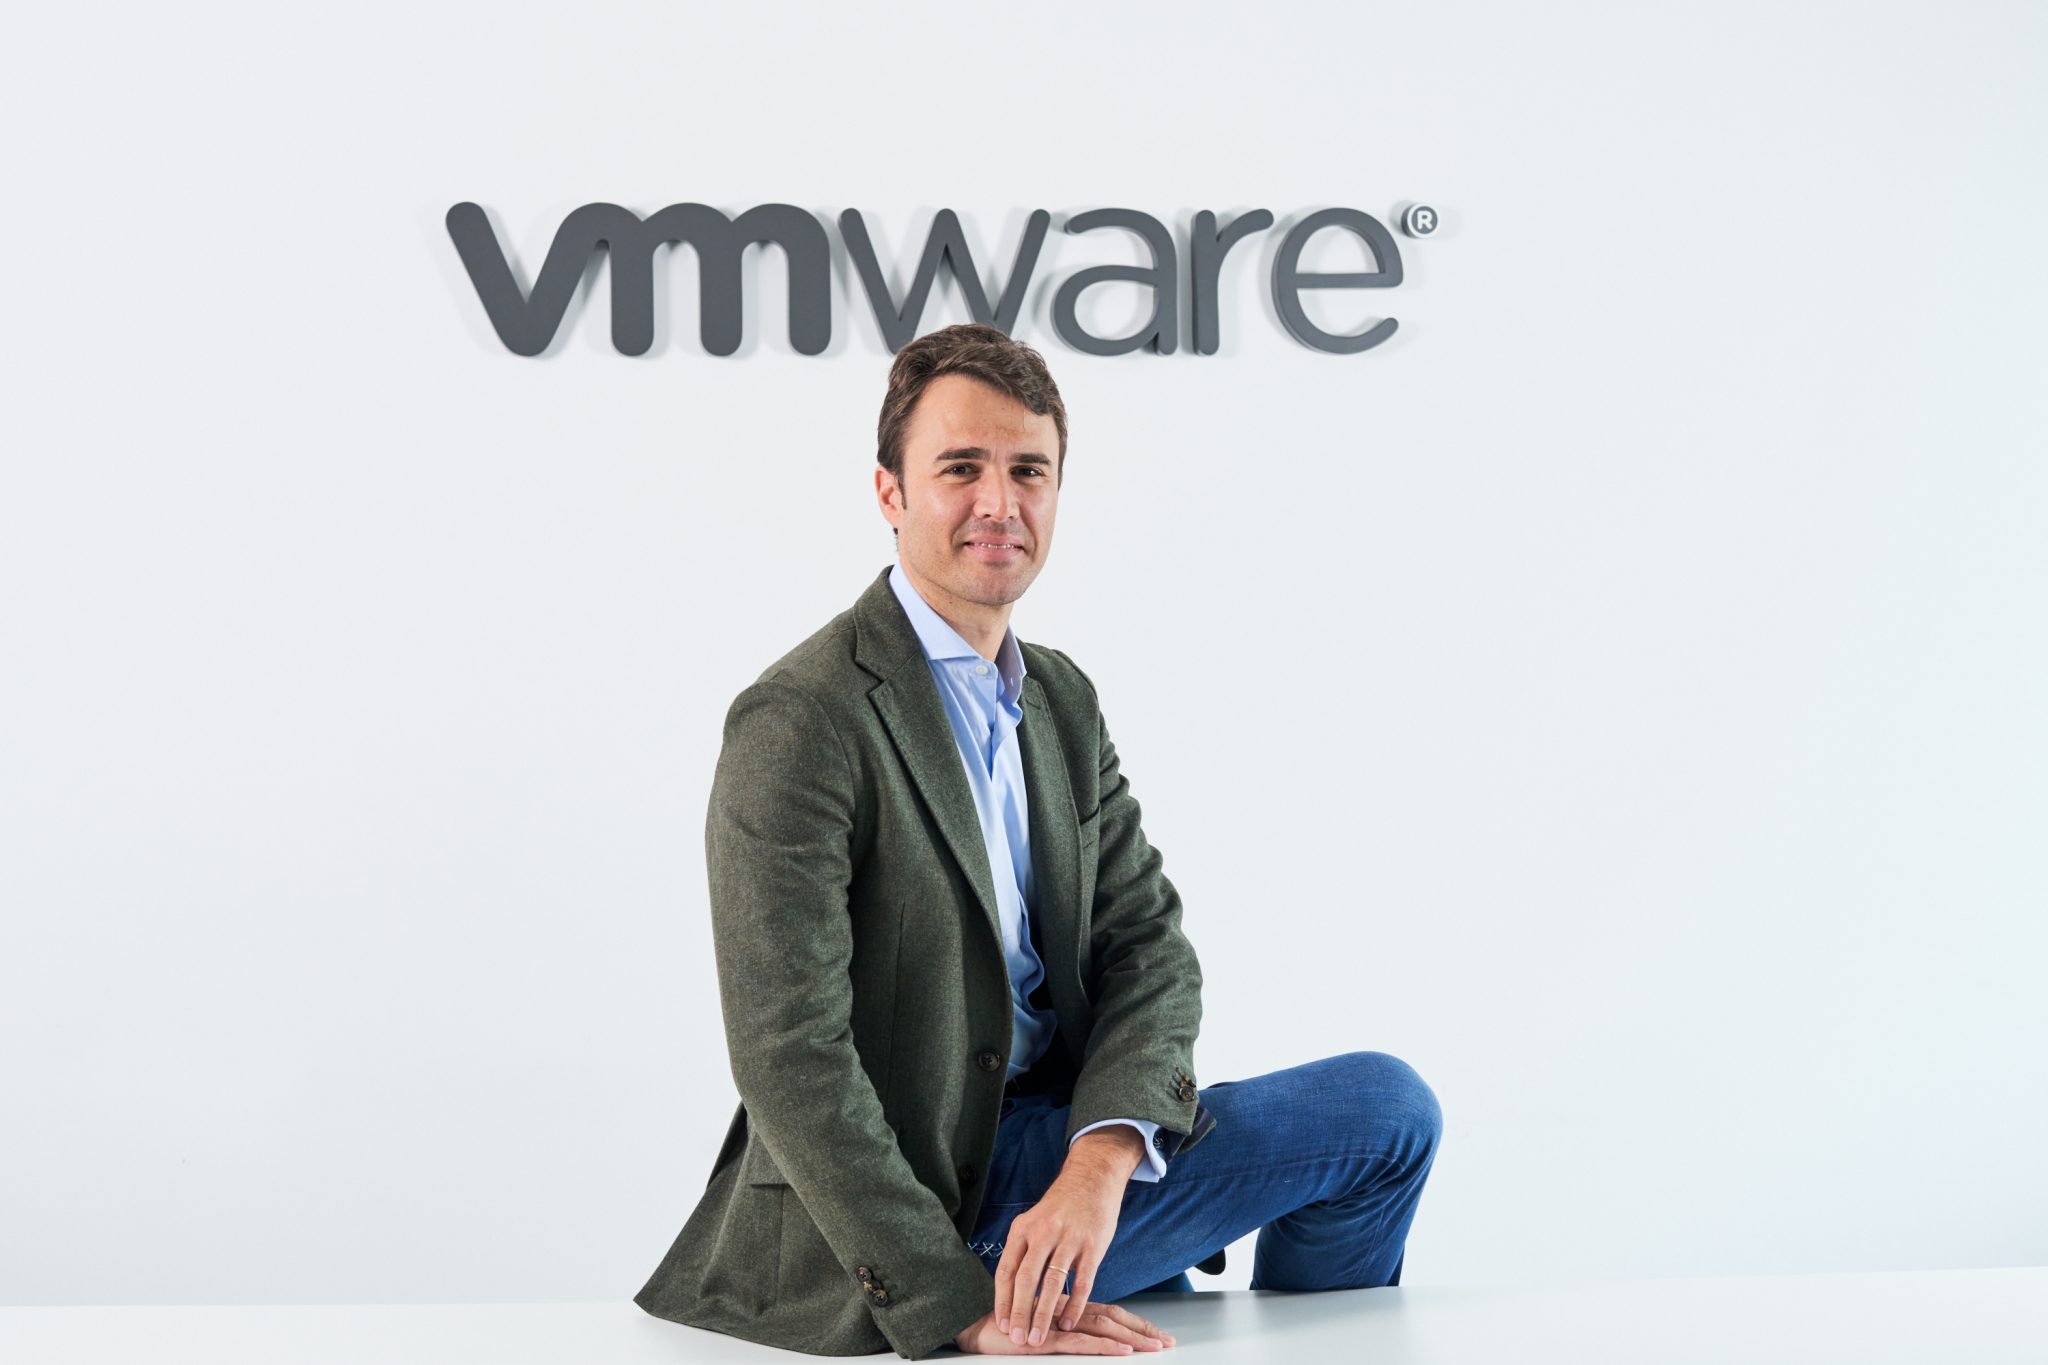 “La tecnología se ve como un impacto positivo en la ciudadanía” Alex Bento, Sales Director Enterprise de VMware Iberia